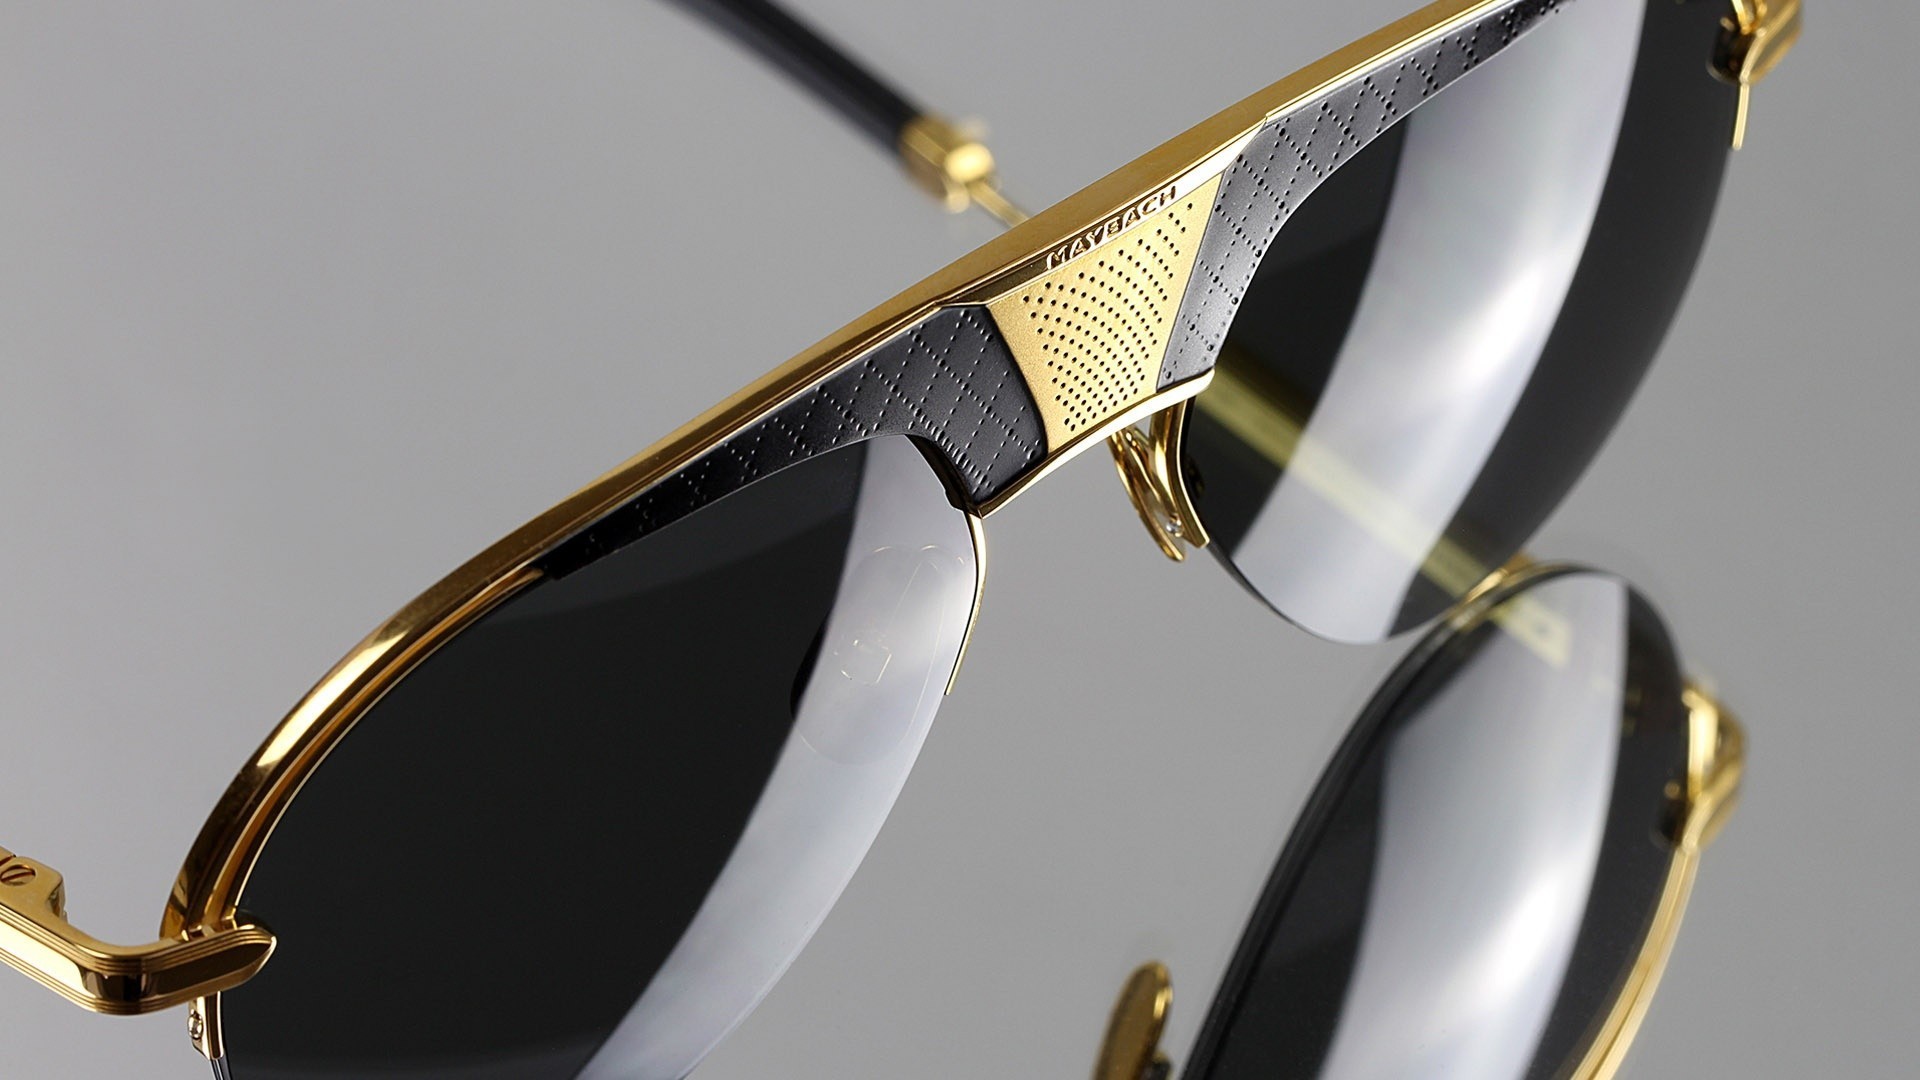 Nahaufnahme von einer Maybach Sonnenbrille mit goldenen Details.